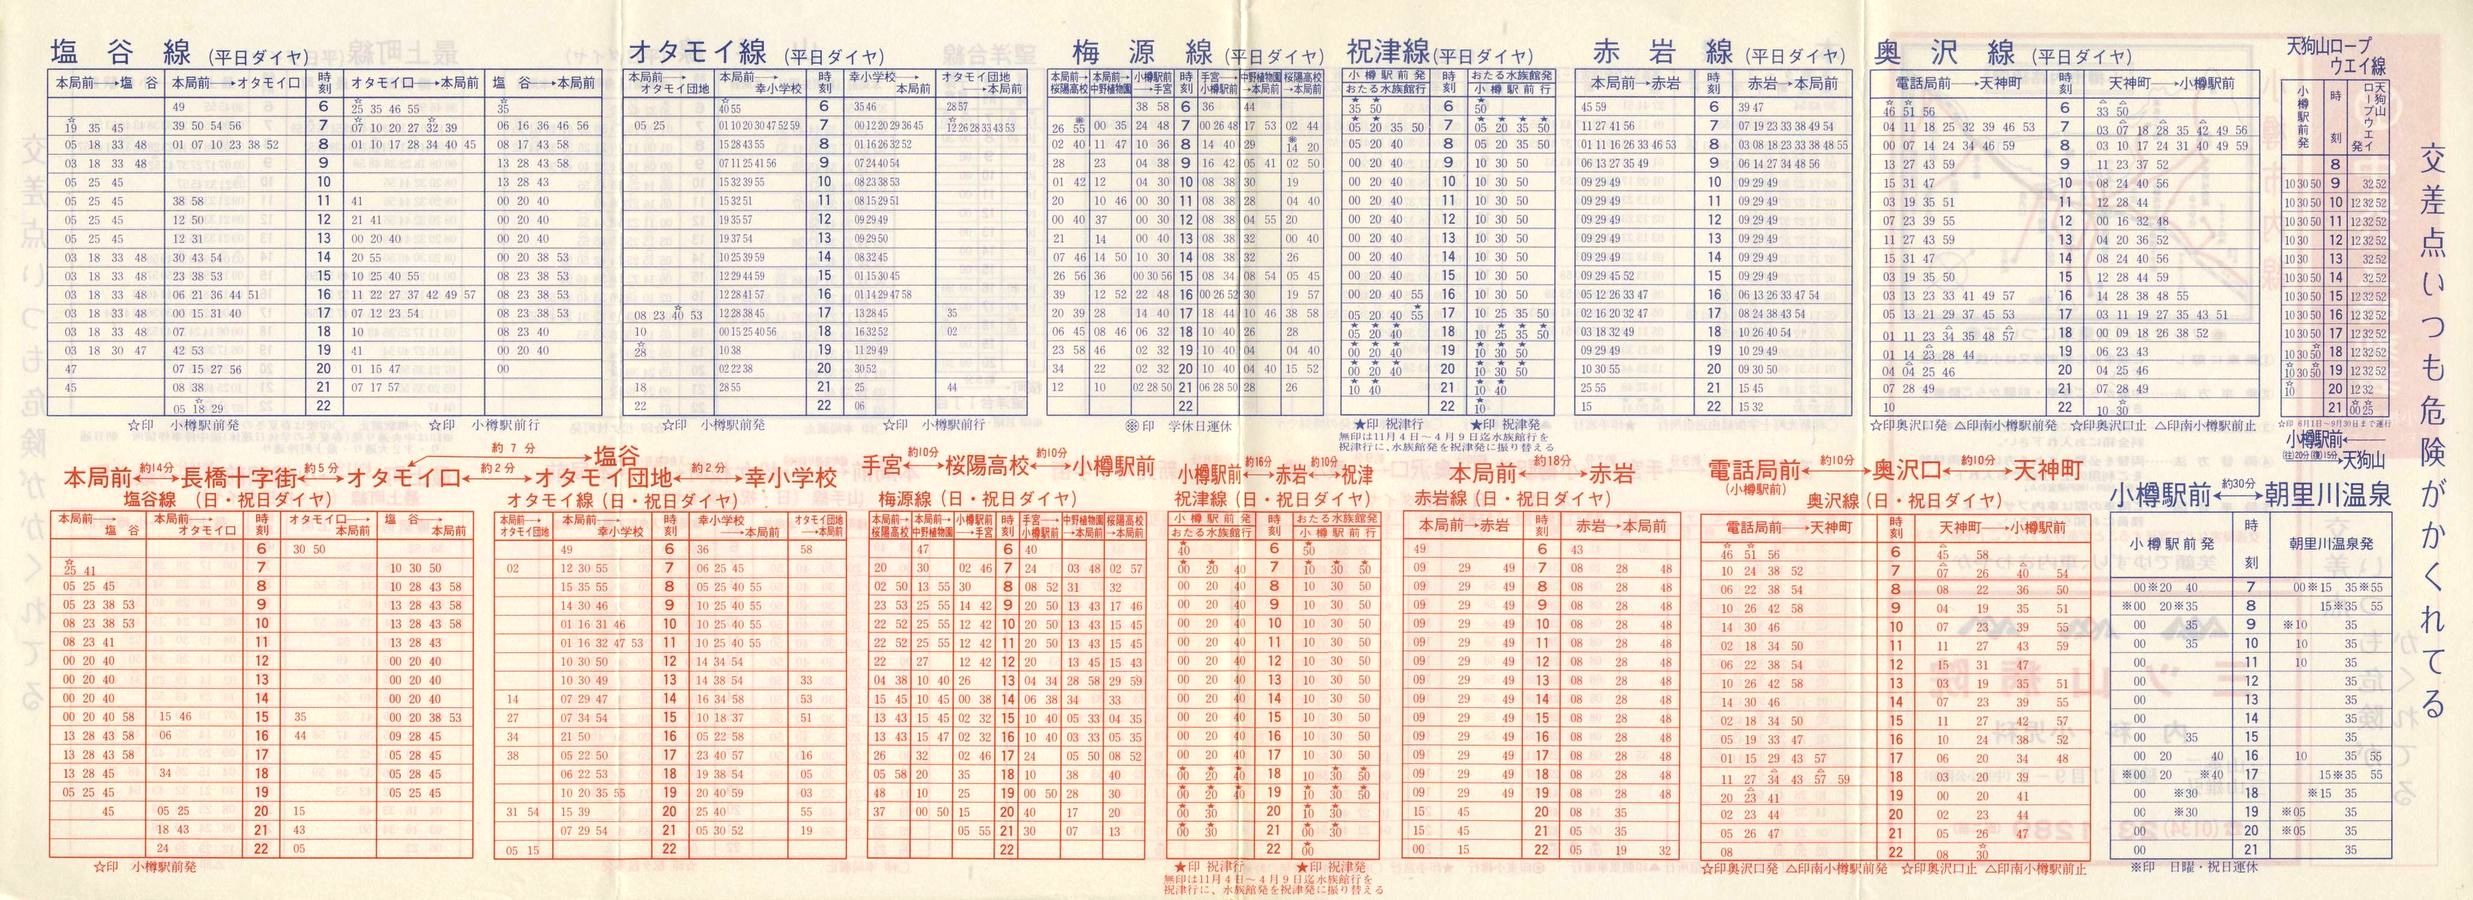 1984-04-10改正_北海道中央バス(小樽)_小樽市内線時刻表裏面